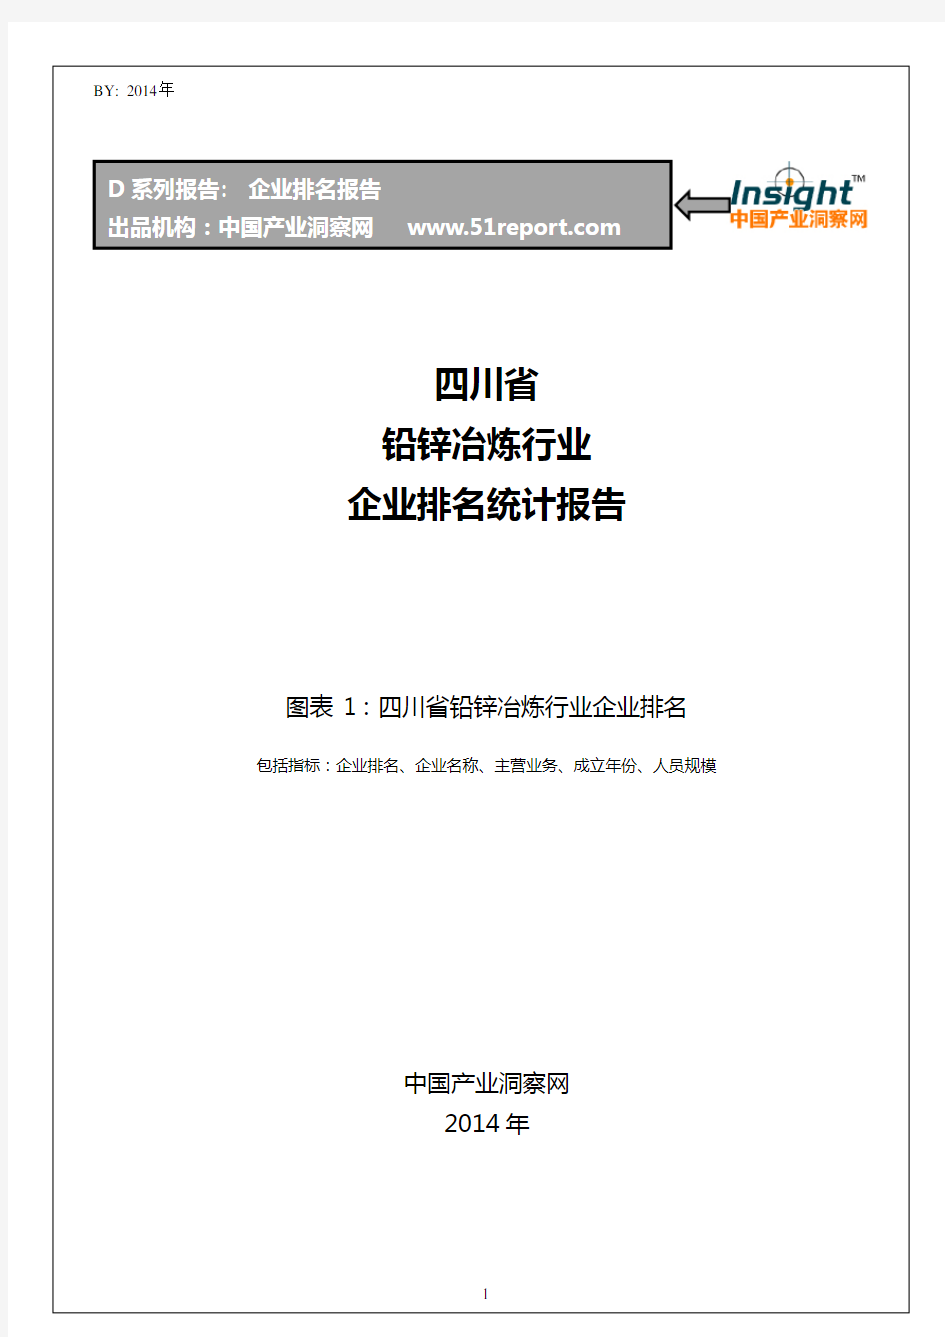 四川省铅锌冶炼行业企业排名统计报告